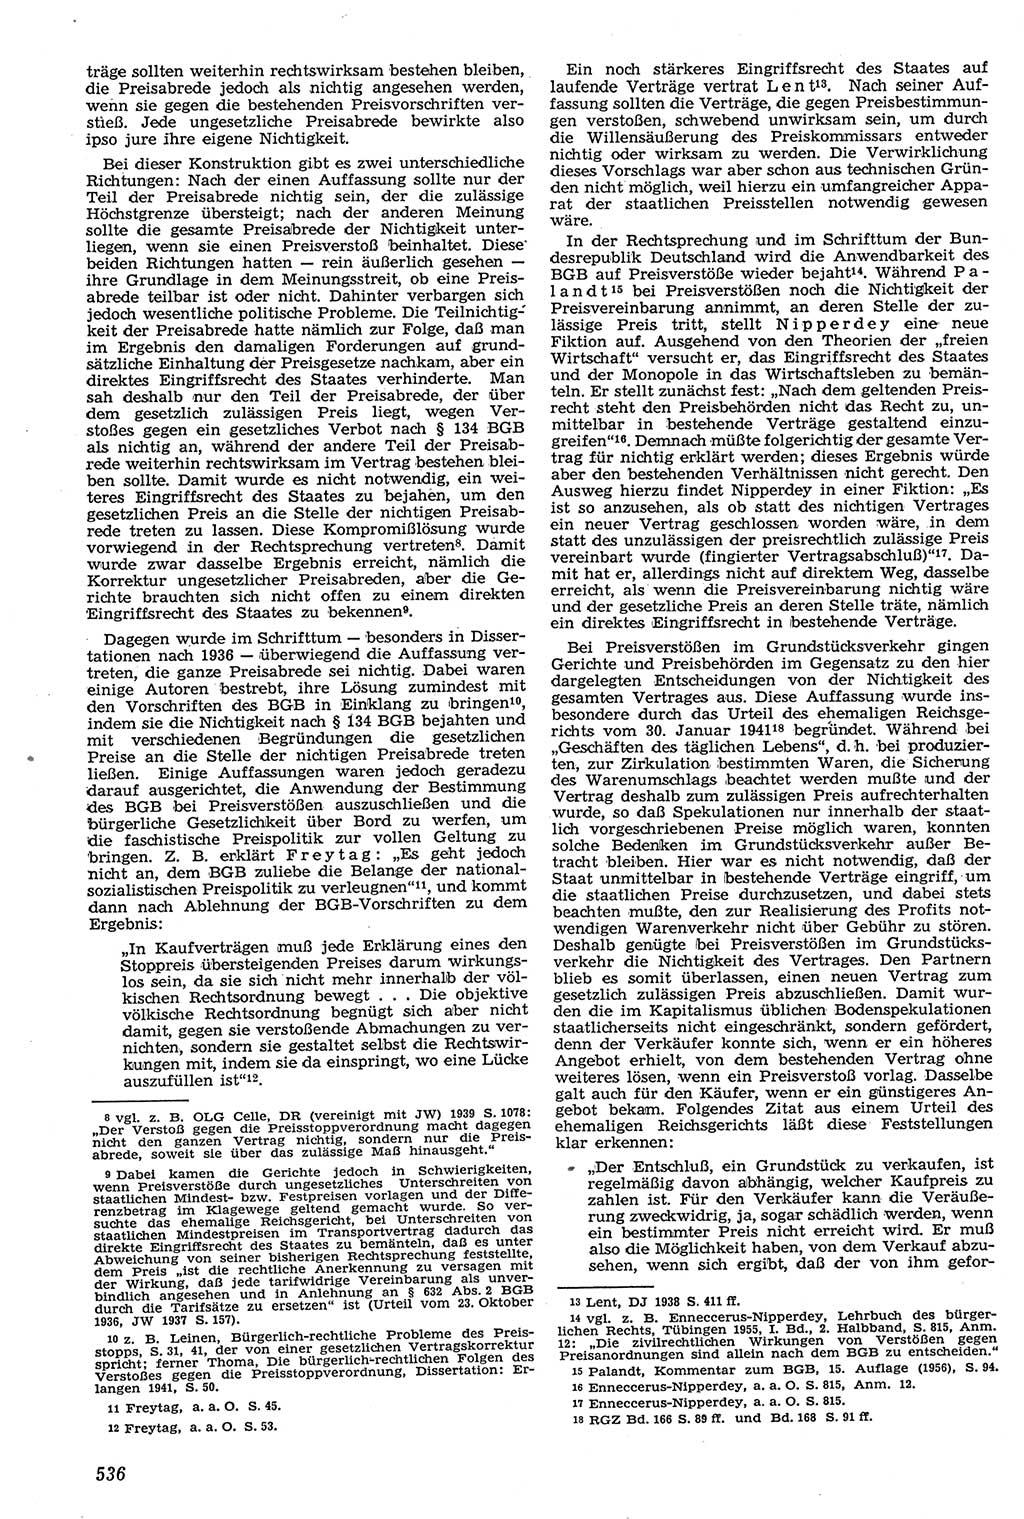 Neue Justiz (NJ), Zeitschrift für Recht und Rechtswissenschaft [Deutsche Demokratische Republik (DDR)], 11. Jahrgang 1957, Seite 536 (NJ DDR 1957, S. 536)